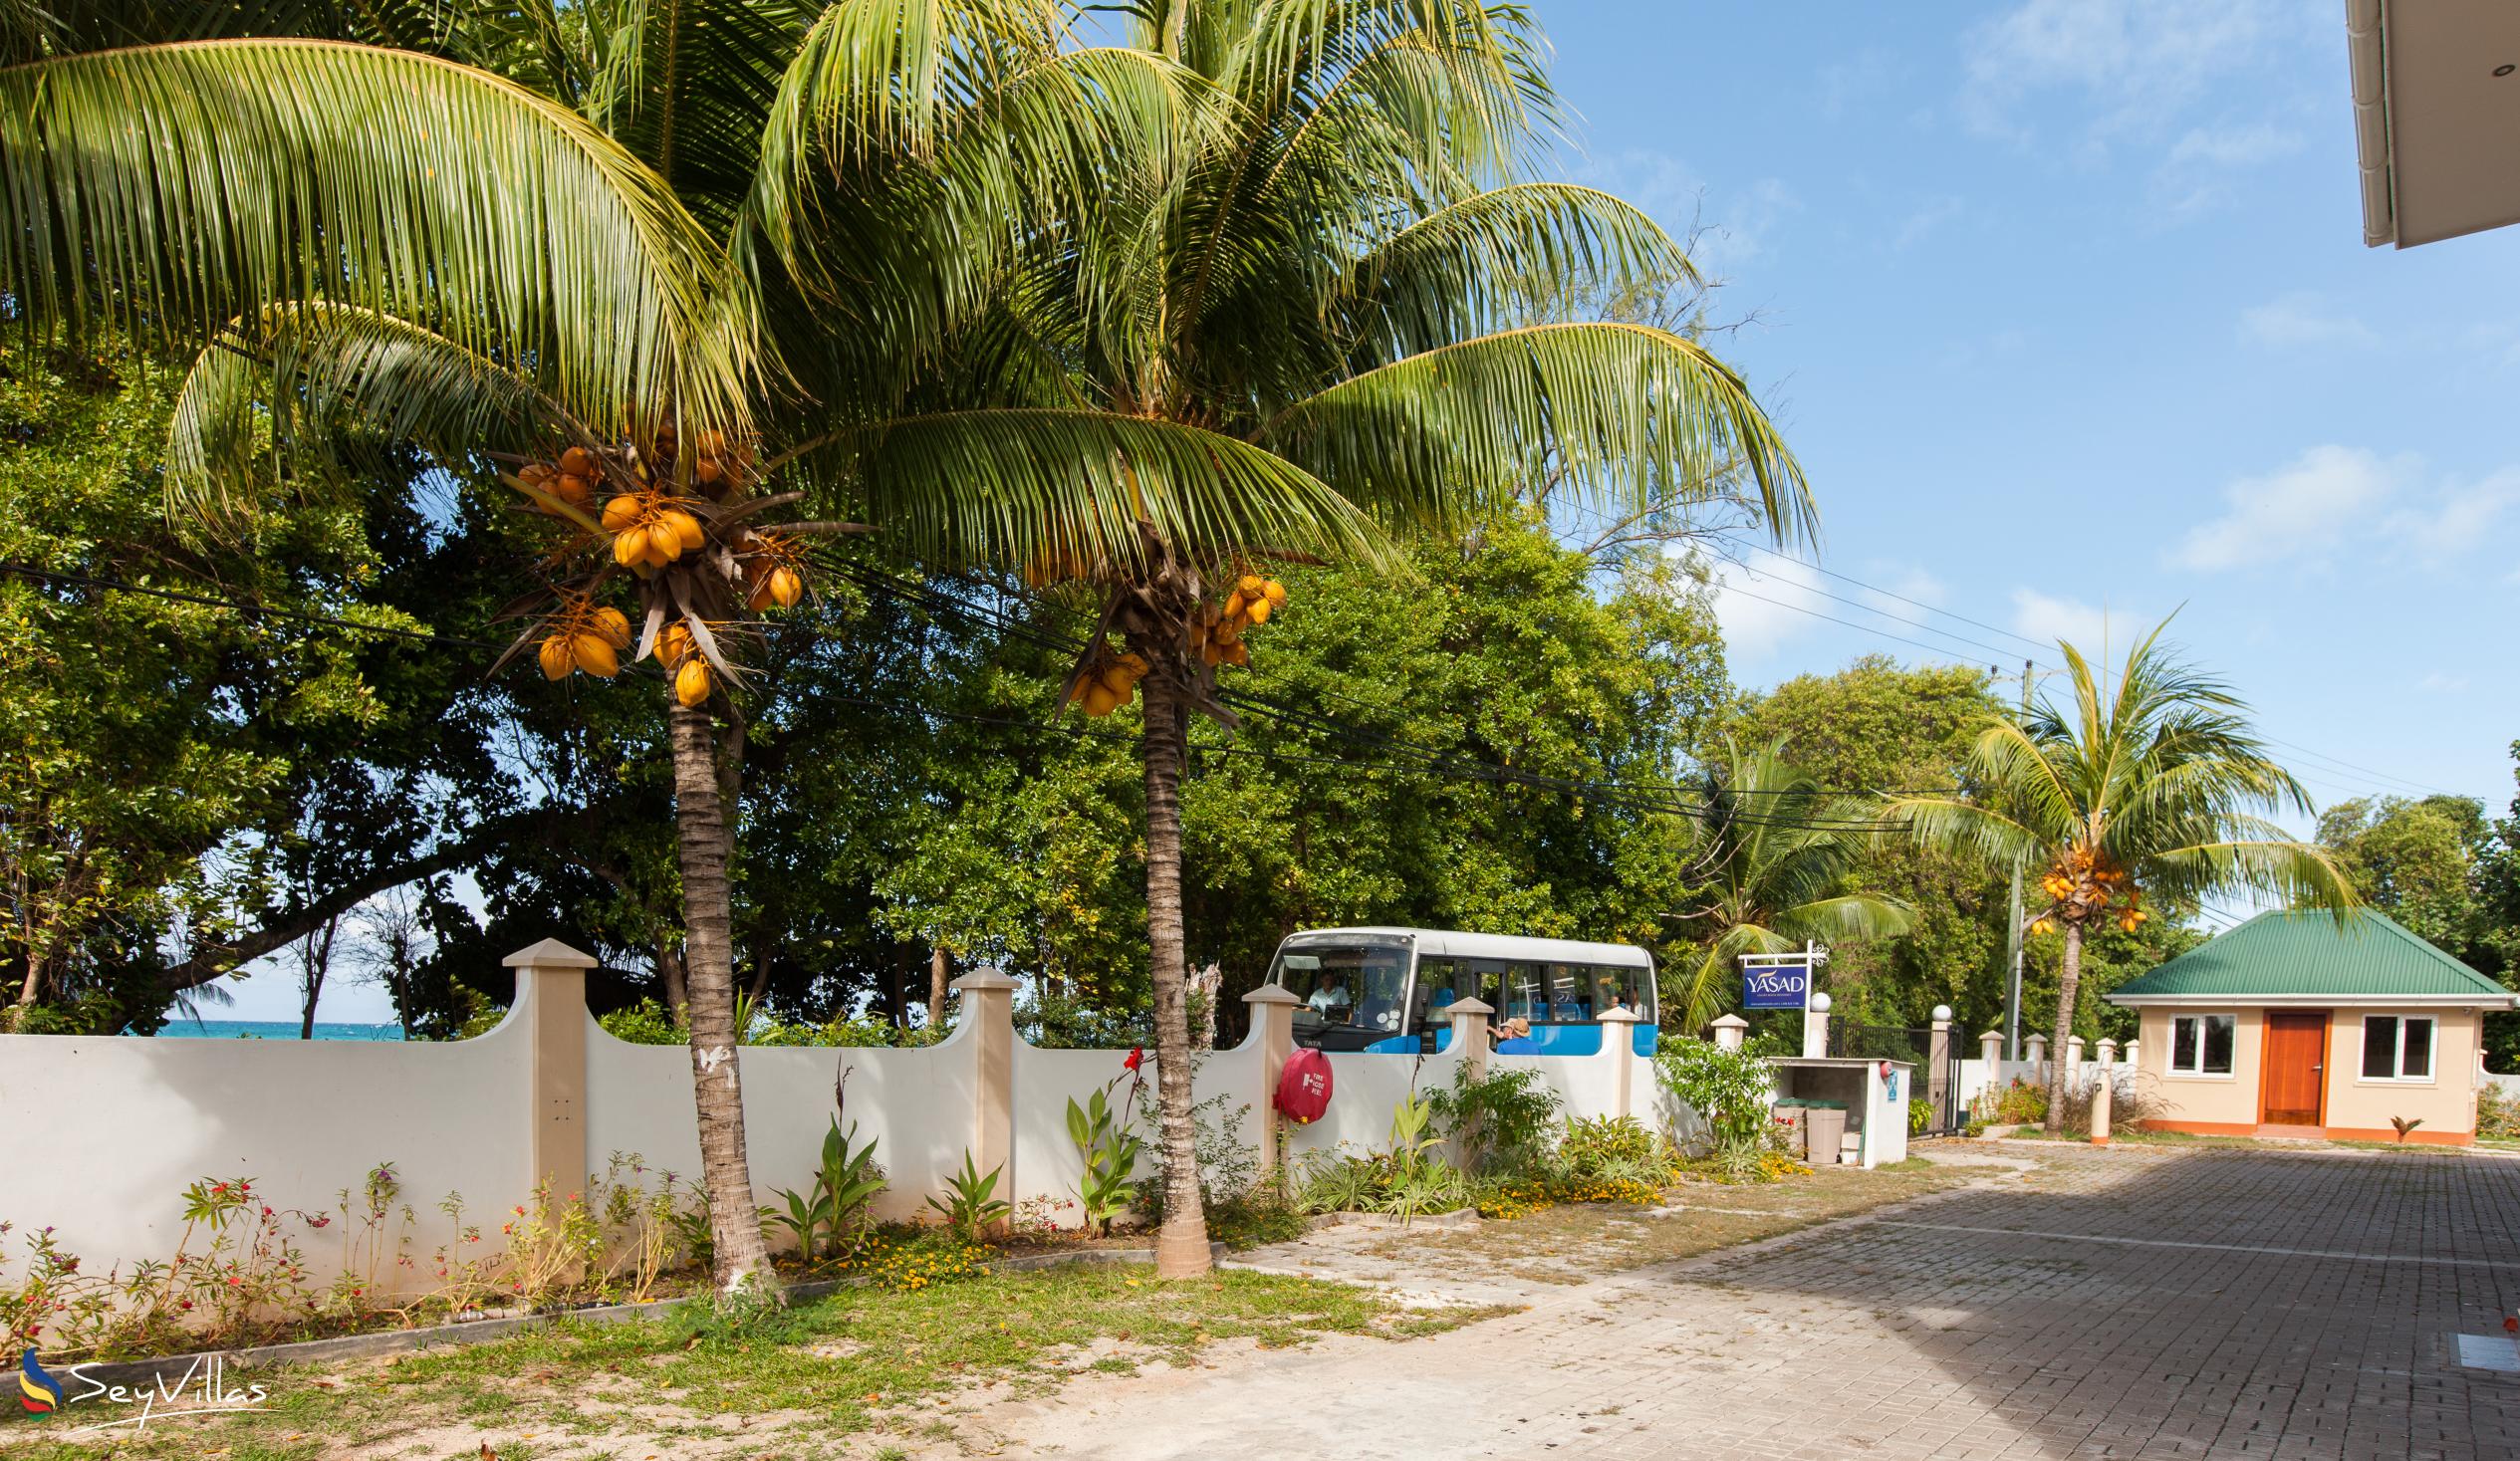 Foto 10: YASAD Luxury Beach Residence - Aussenbereich - Praslin (Seychellen)